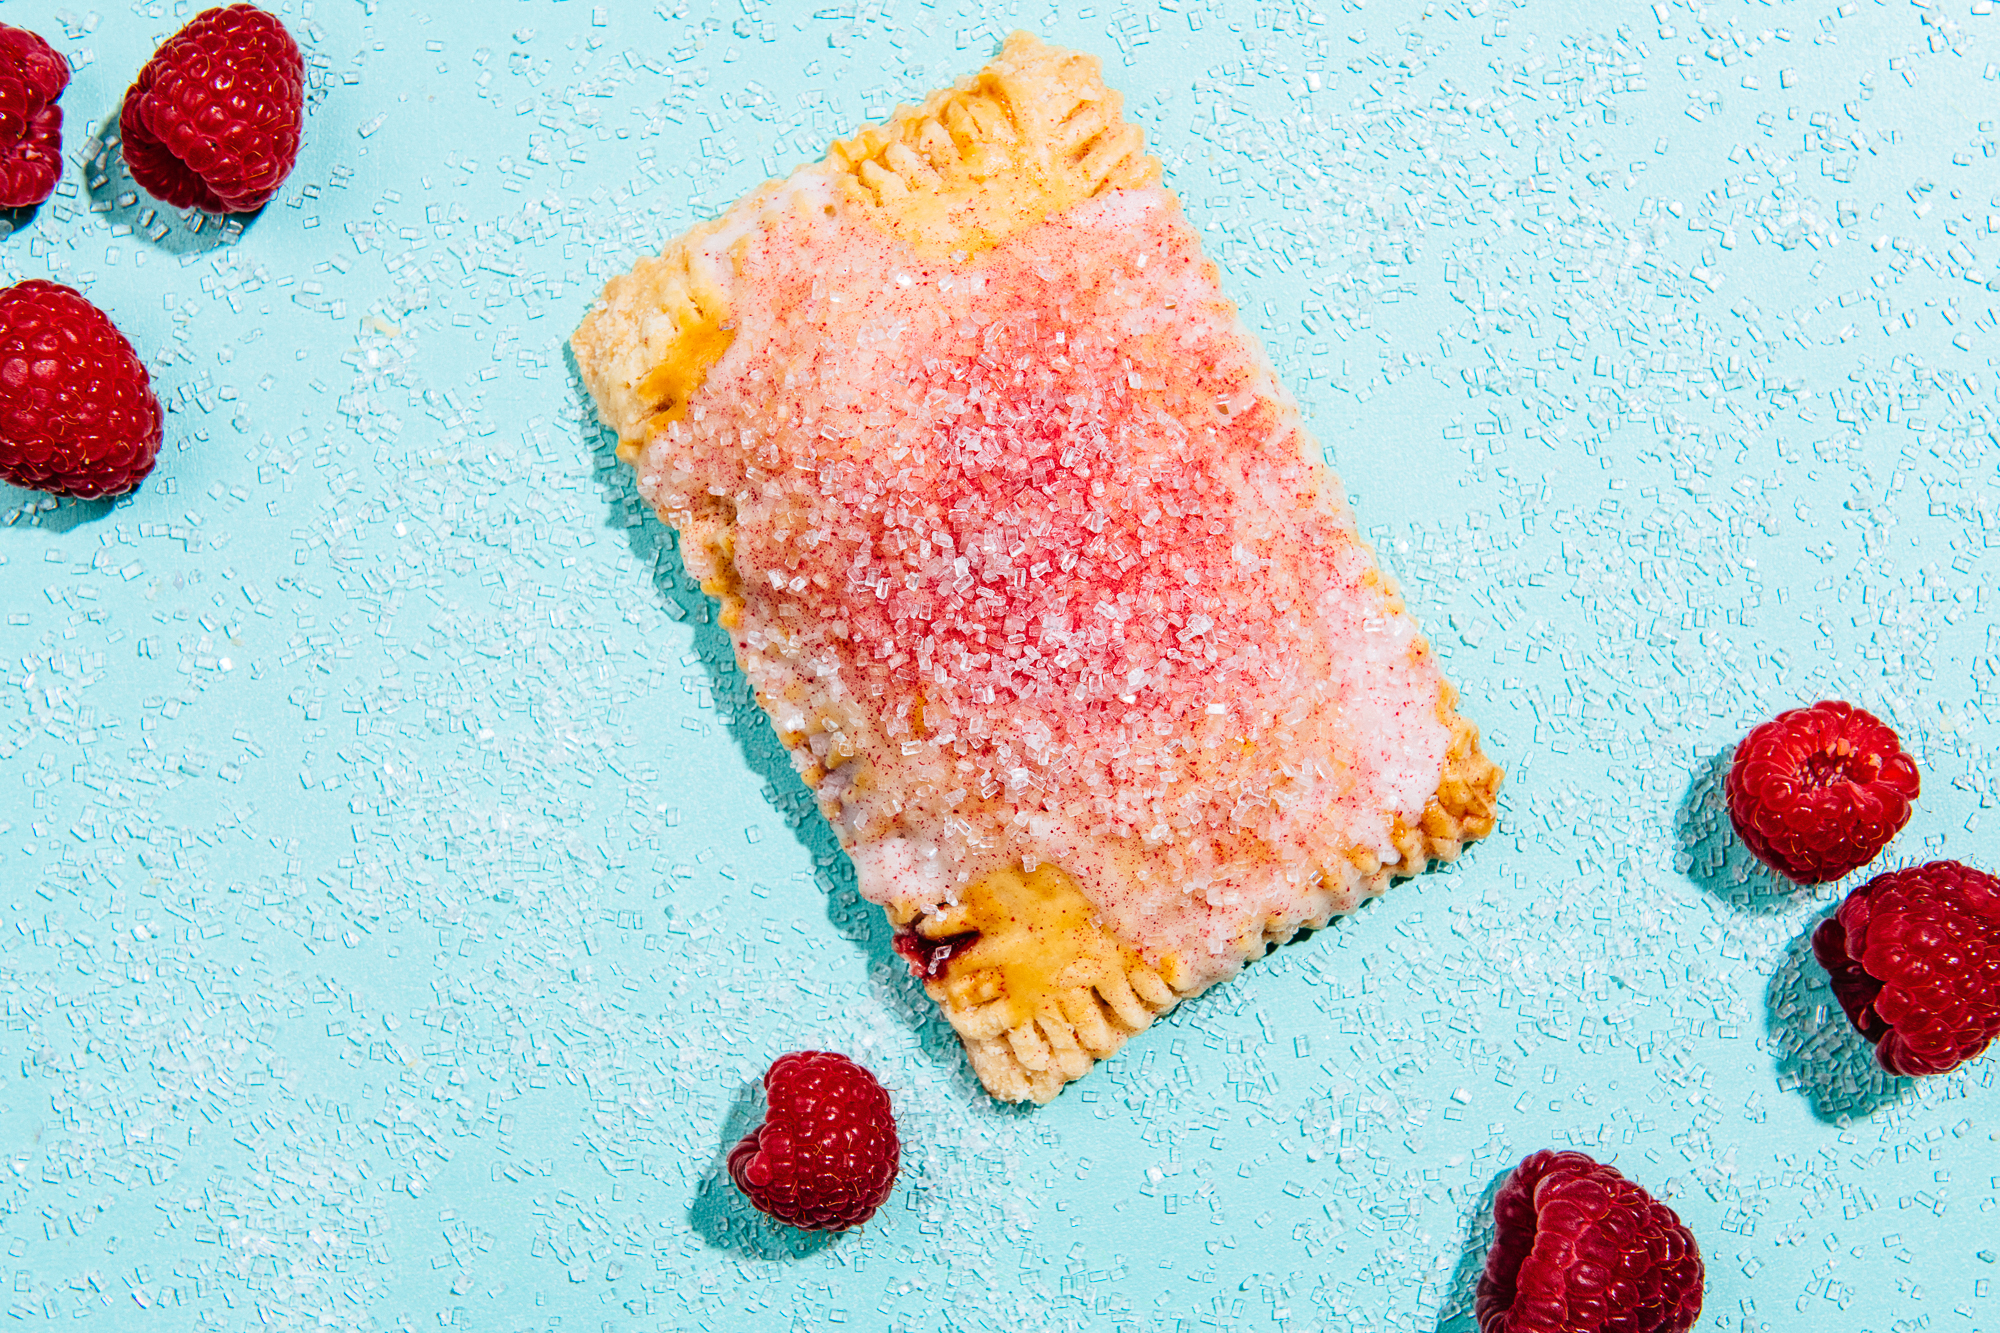 The Berry Best Homemade Pop Tarts